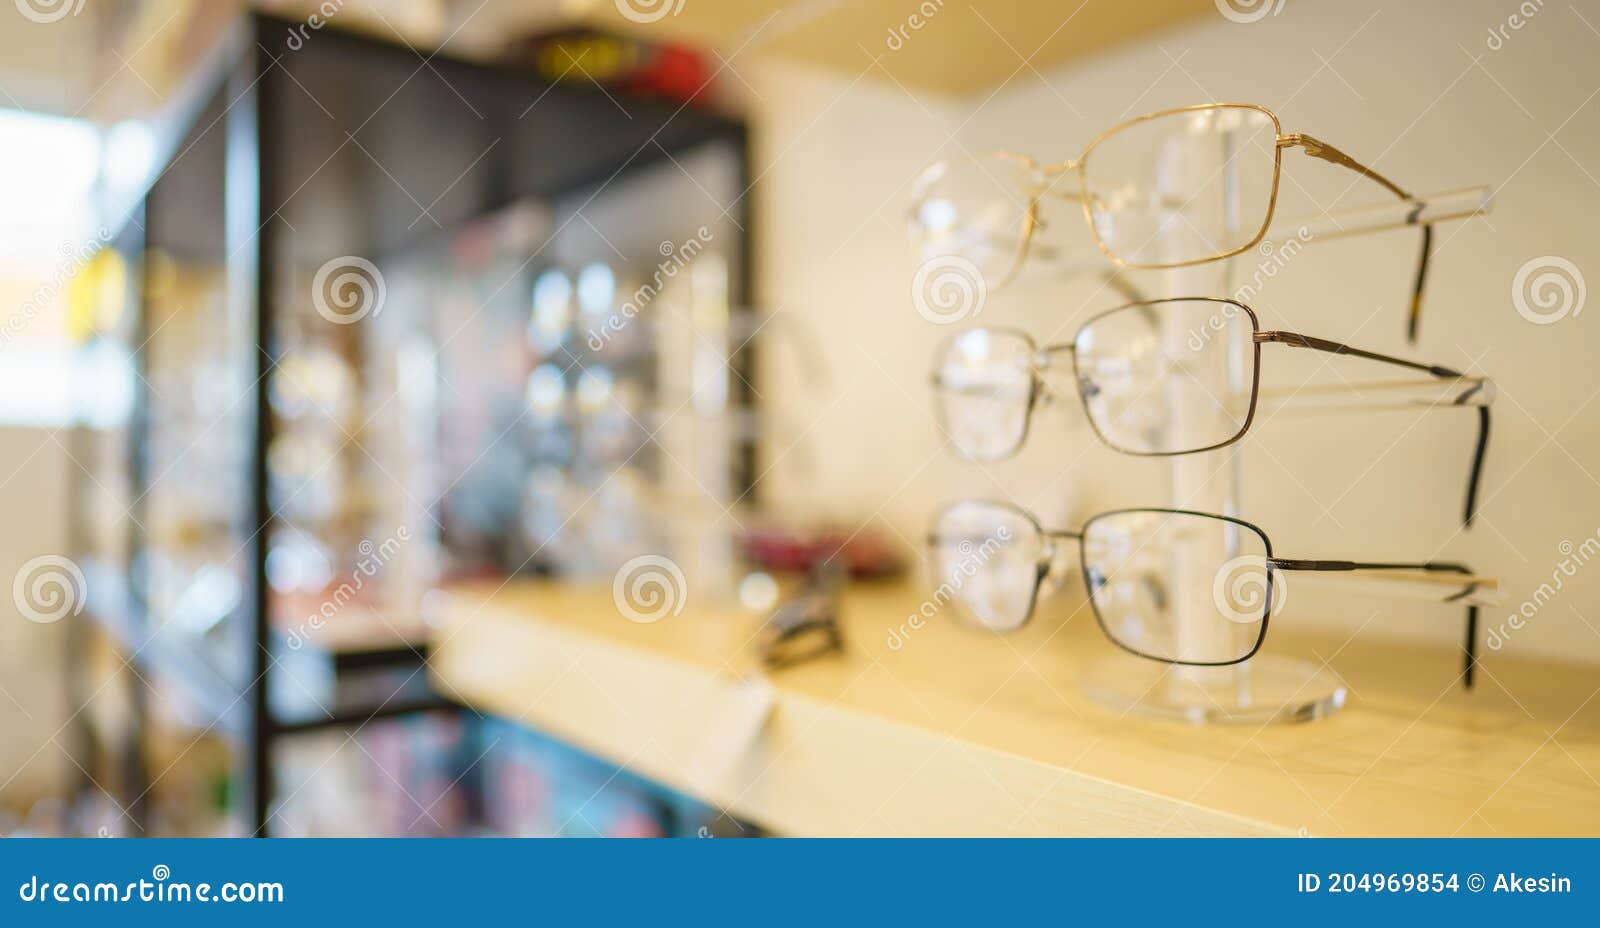 Pantalla De Anteojos En Soporte De Gafas En Estantes En Tienda óptica Foto  de archivo - Imagen de sunglasses, filas: 204969854